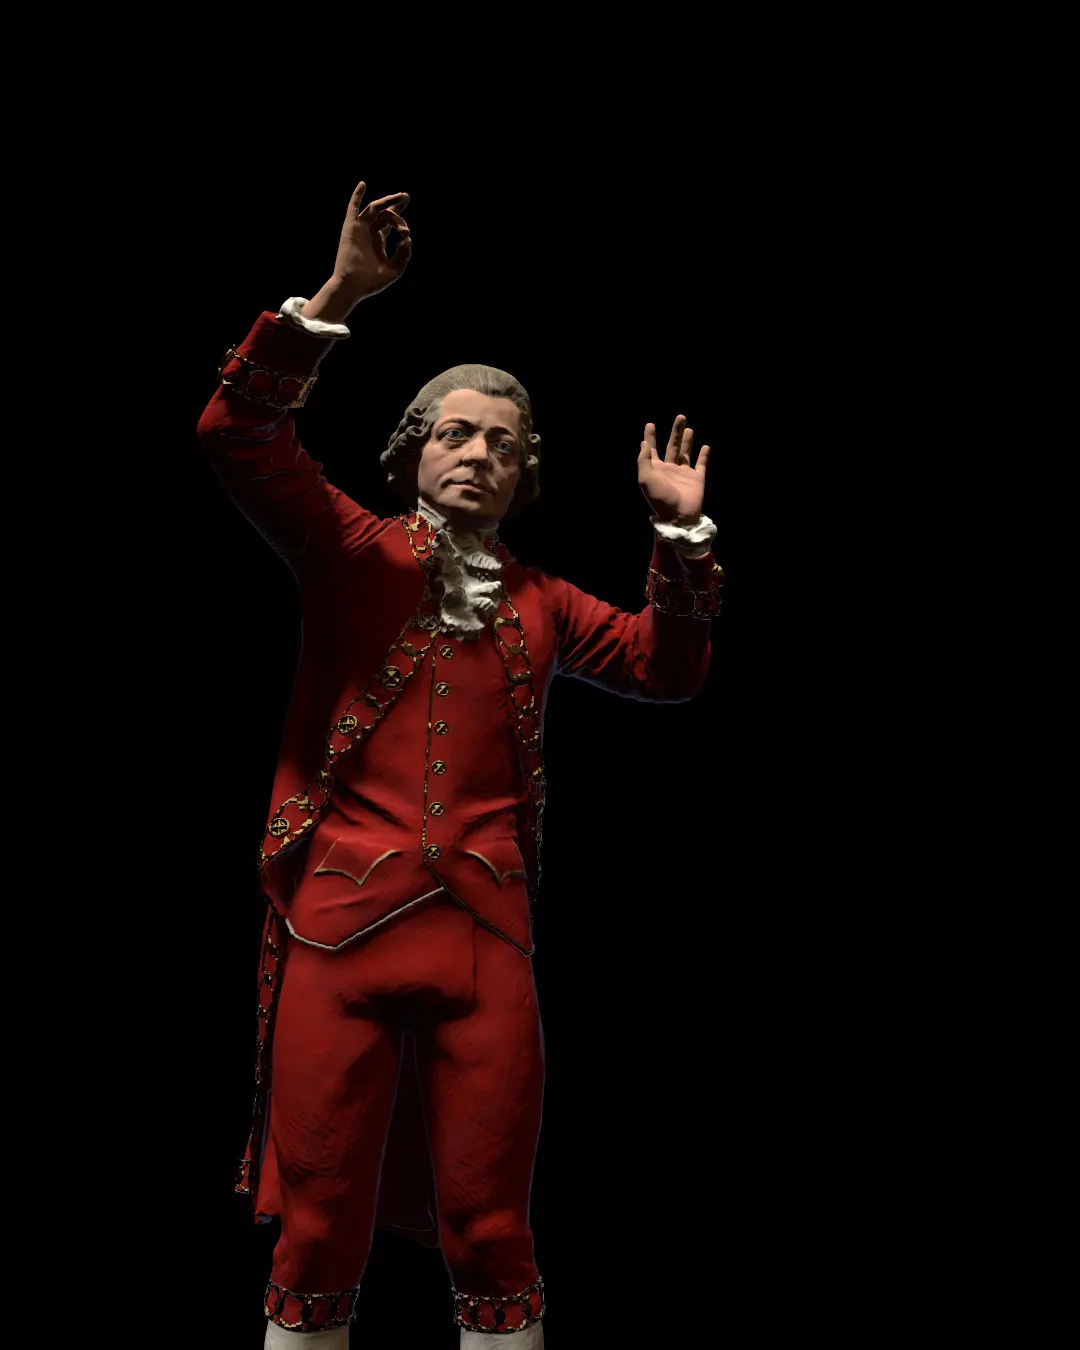 Wolfgang-Amadeus-Mozart-statue/Rendering-of-Wolfgang-Amadeus-Mozart-statue-modeled-by-Emil-Sole-5.webp